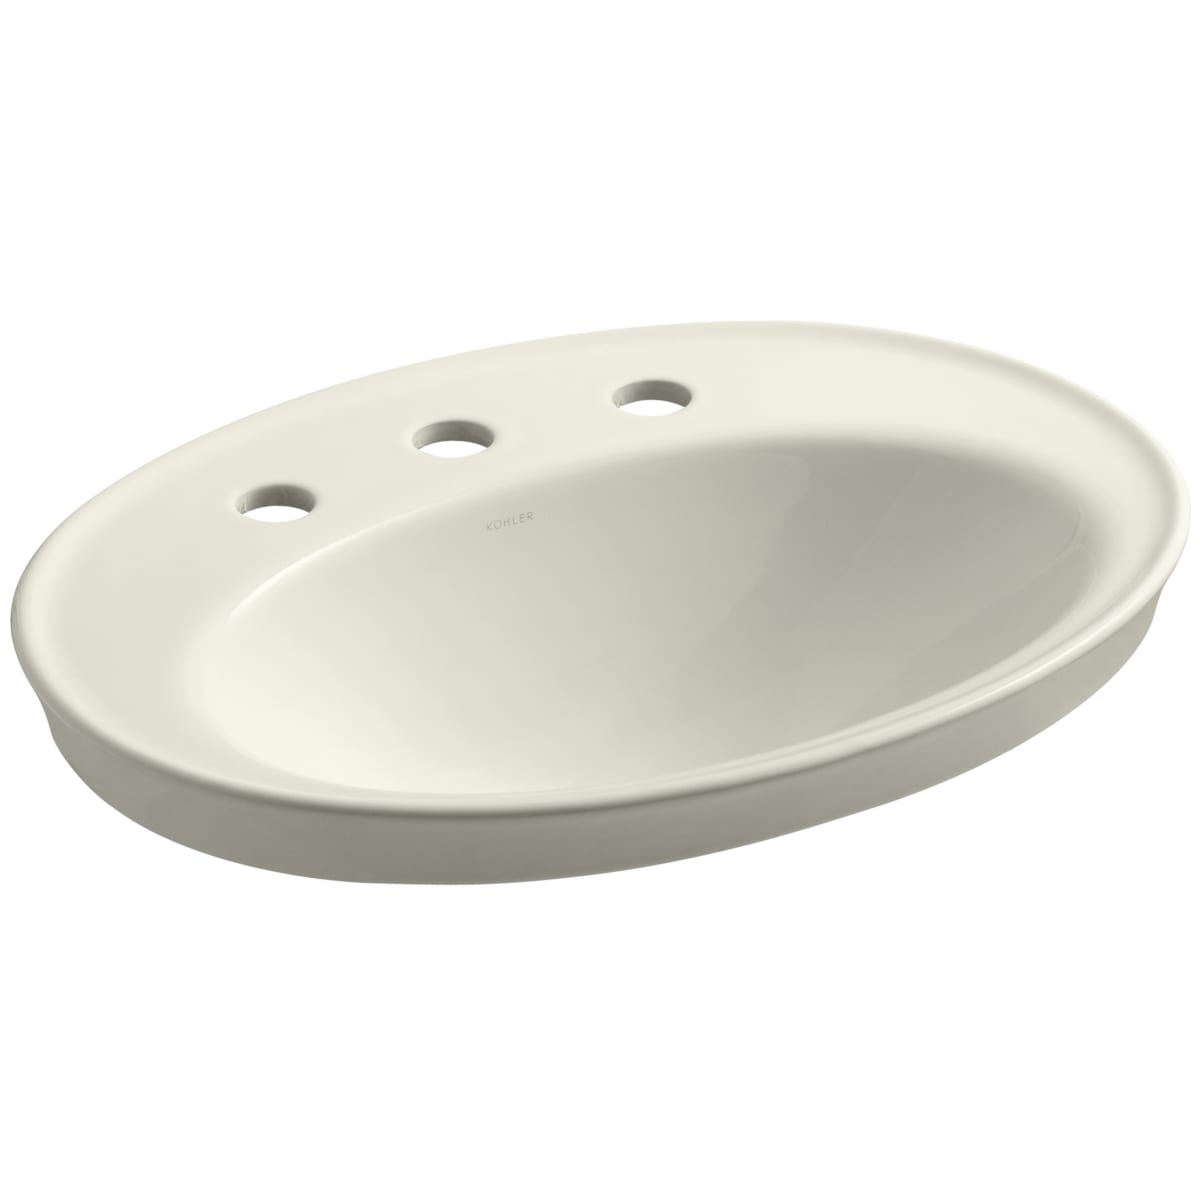 White KOHLER K-2075-4-0 Serif Self-Rimming Bathroom Sink